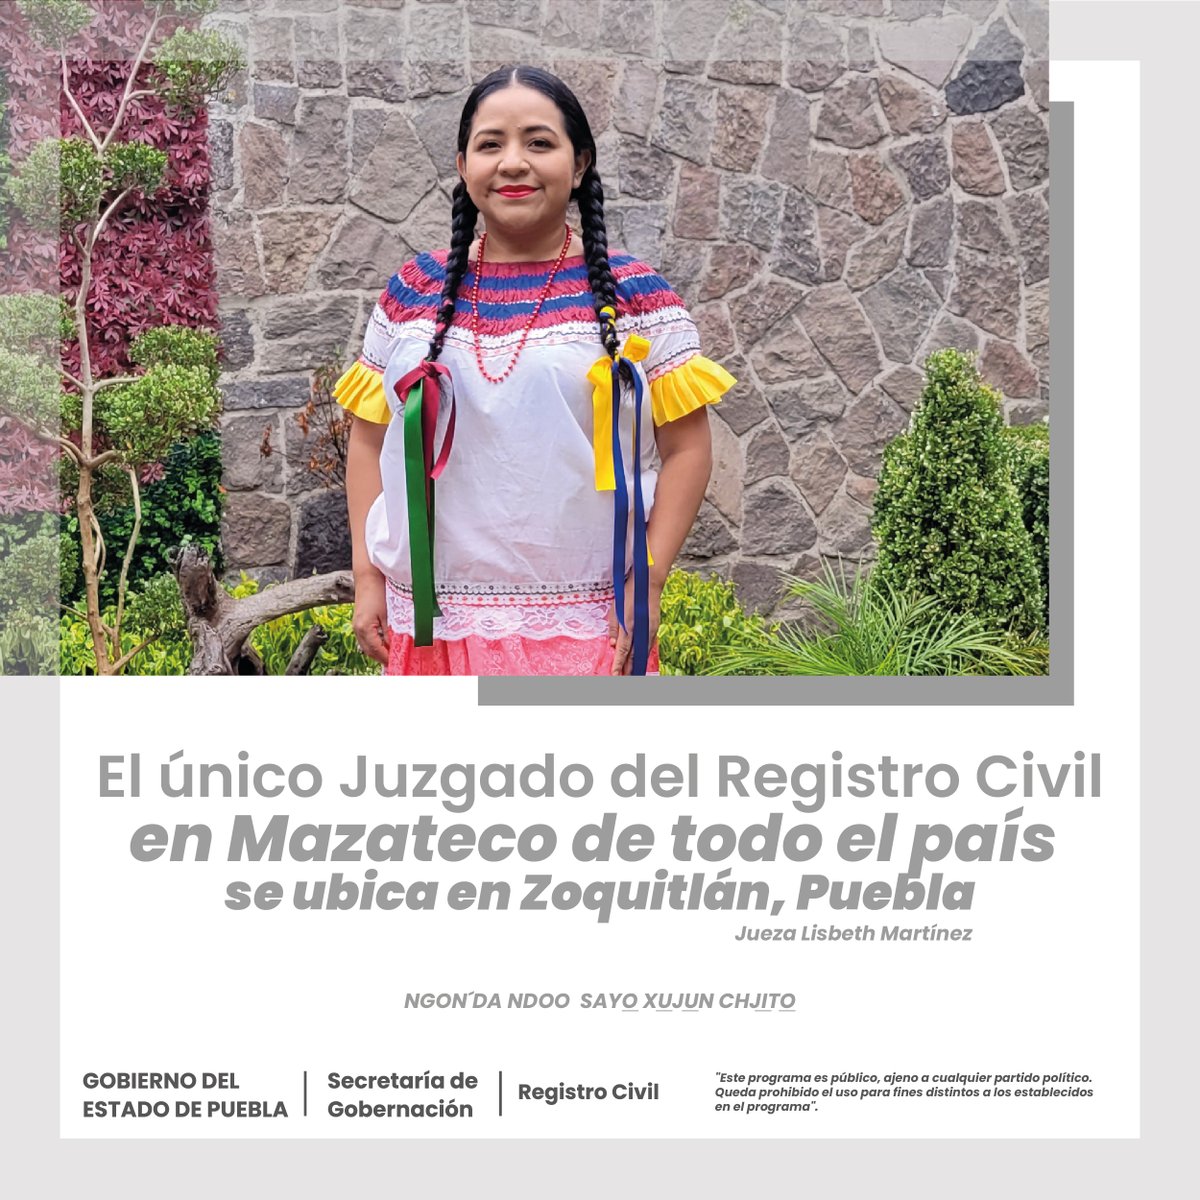 #RegistroCivilInforma || En el @RCivilPuebla seguimos avanzando a favor de la inclusión y diversidad en #Dialectos. 📌 Ubicación: Tepango de Rodríguez 🟰 Totonaca 📌 Ubicación: Zoquitlán 🟰 Mazateco 📌 Ubicación: Tlaola 🟰 Náhuatl